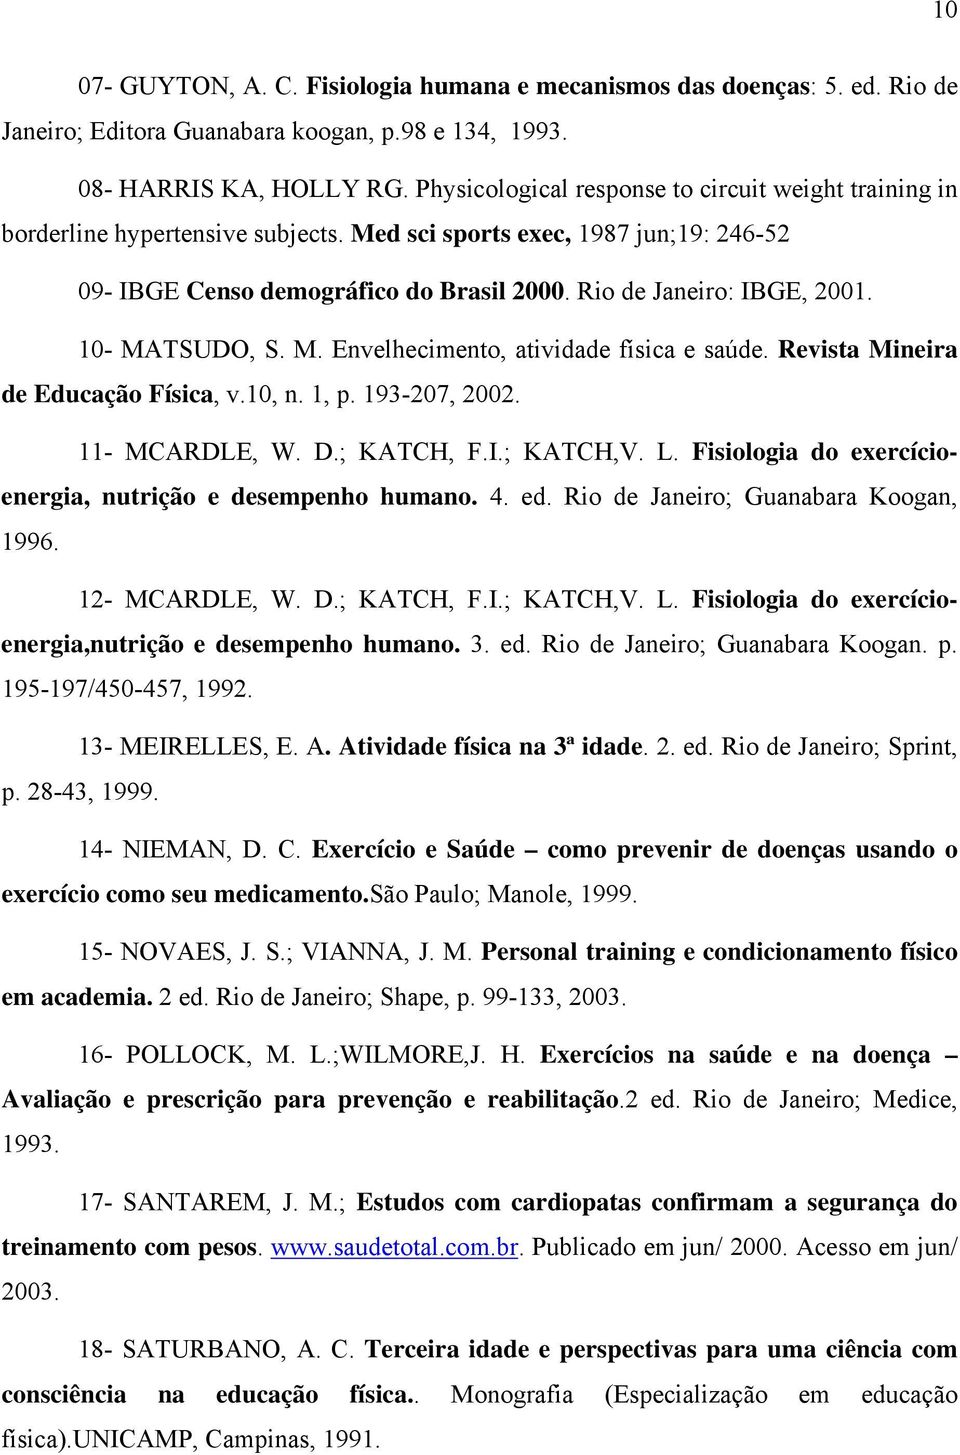 10- MATSUDO, S. M. Envelhecimento, atividade física e saúde. Revista Mineira de Educação Física, v.10, n. 1, p. 193-207, 2002. 11- MCARDLE, W. D.; KATCH, F.I.; KATCH,V. L.